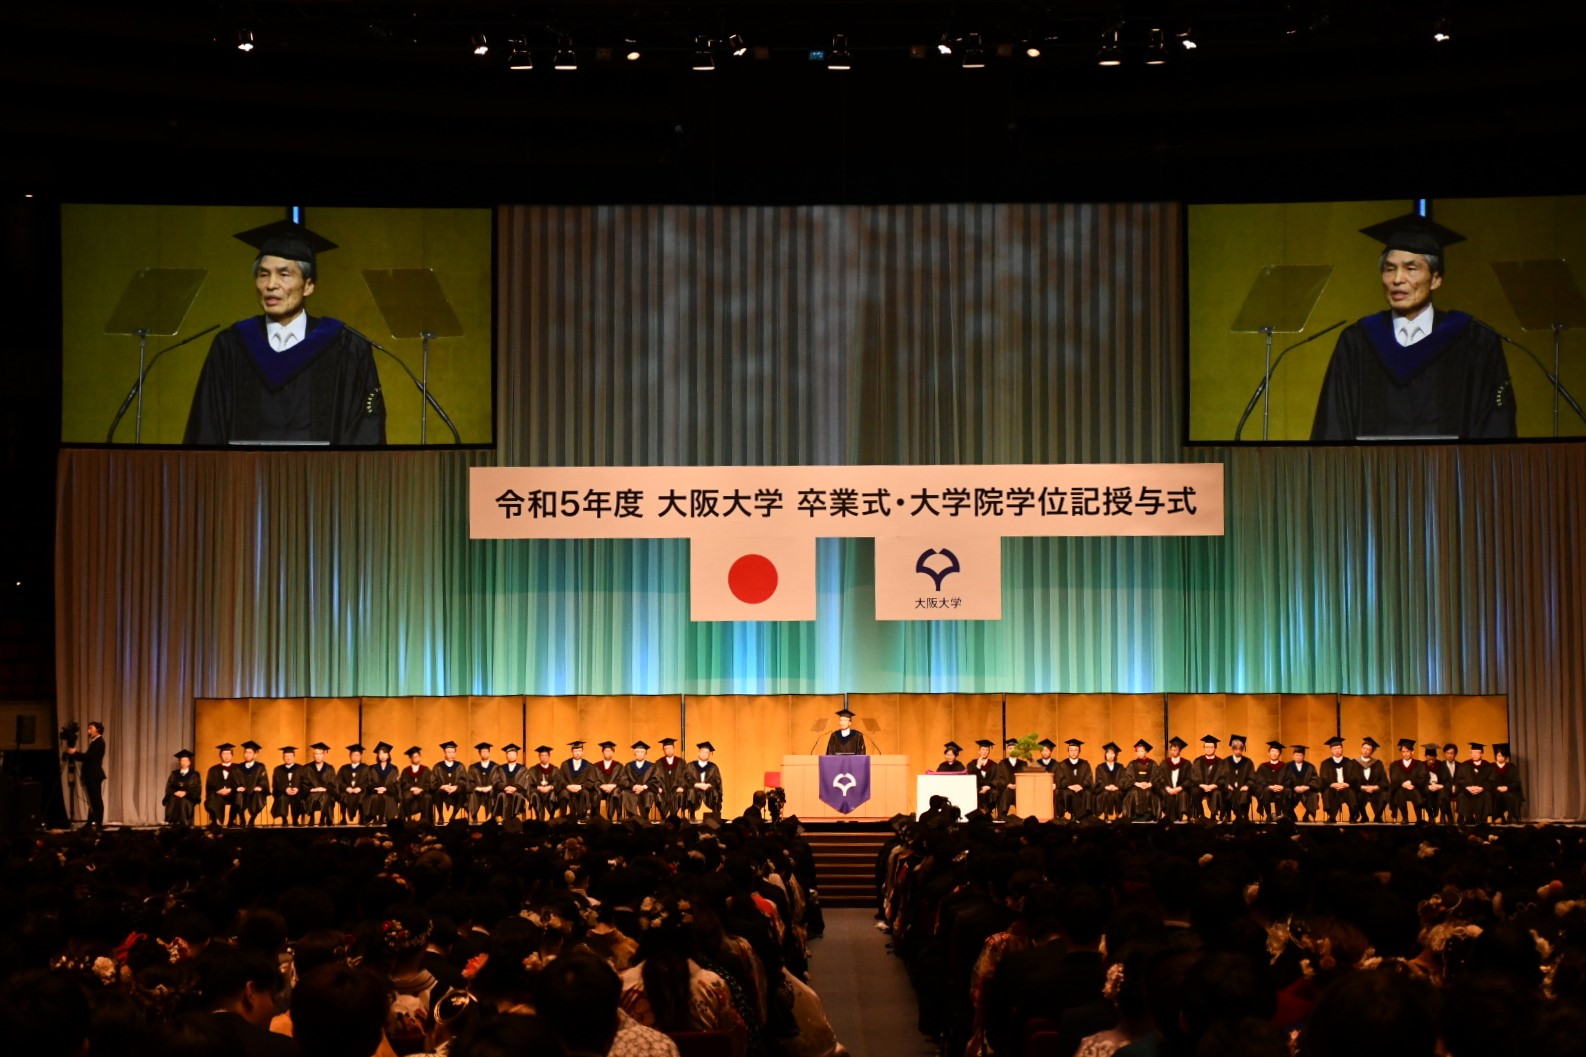 卒業 世界一の思い出” 巨大卒業証書が中学校に さいたま市大宮区 | NHK